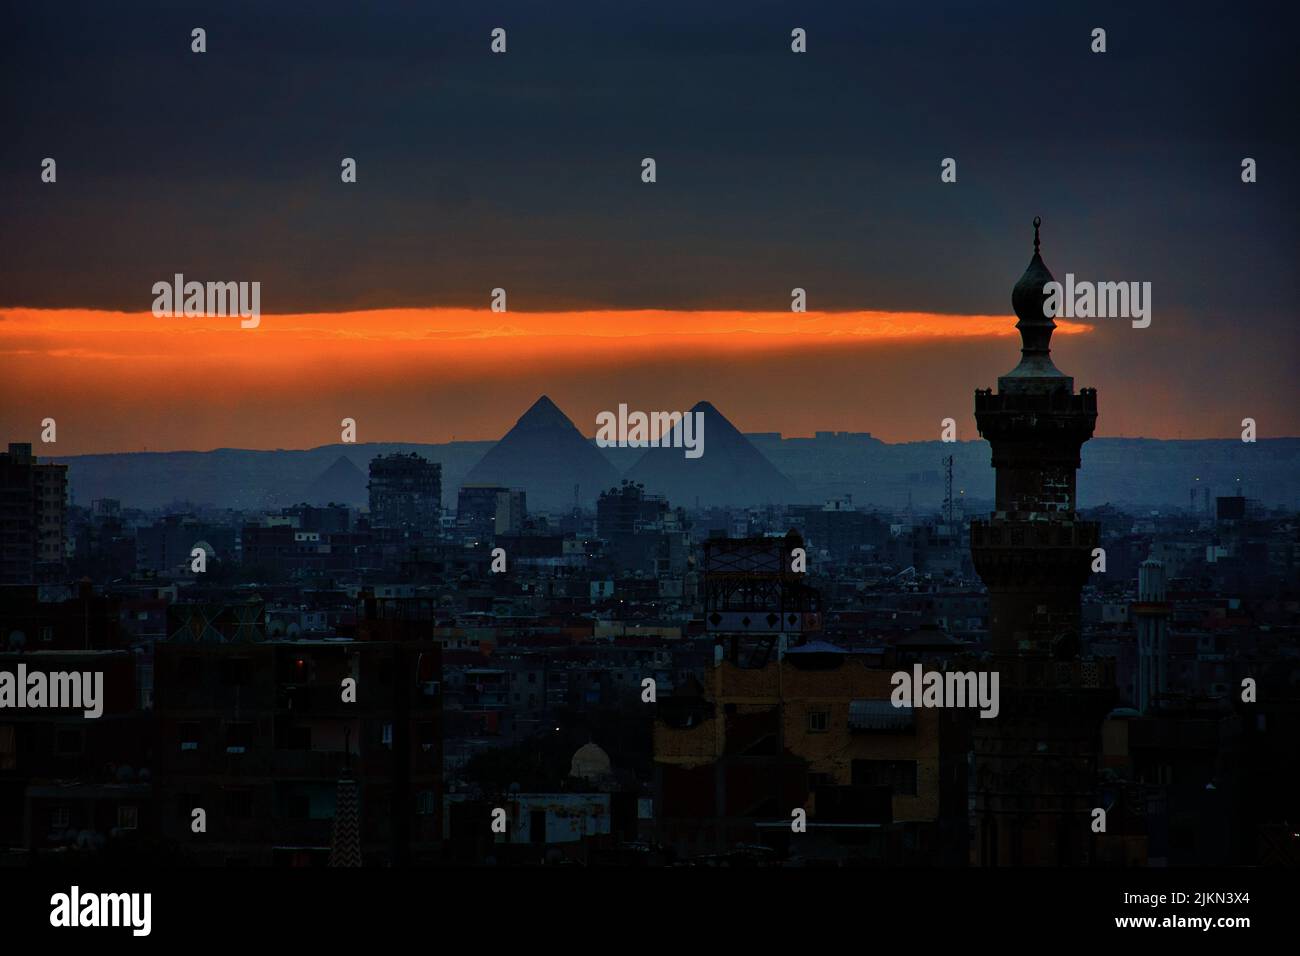 El paisaje urbano de El Cairo con los edificios y las pirámides en la puesta de sol escénica en Egipto Foto de stock